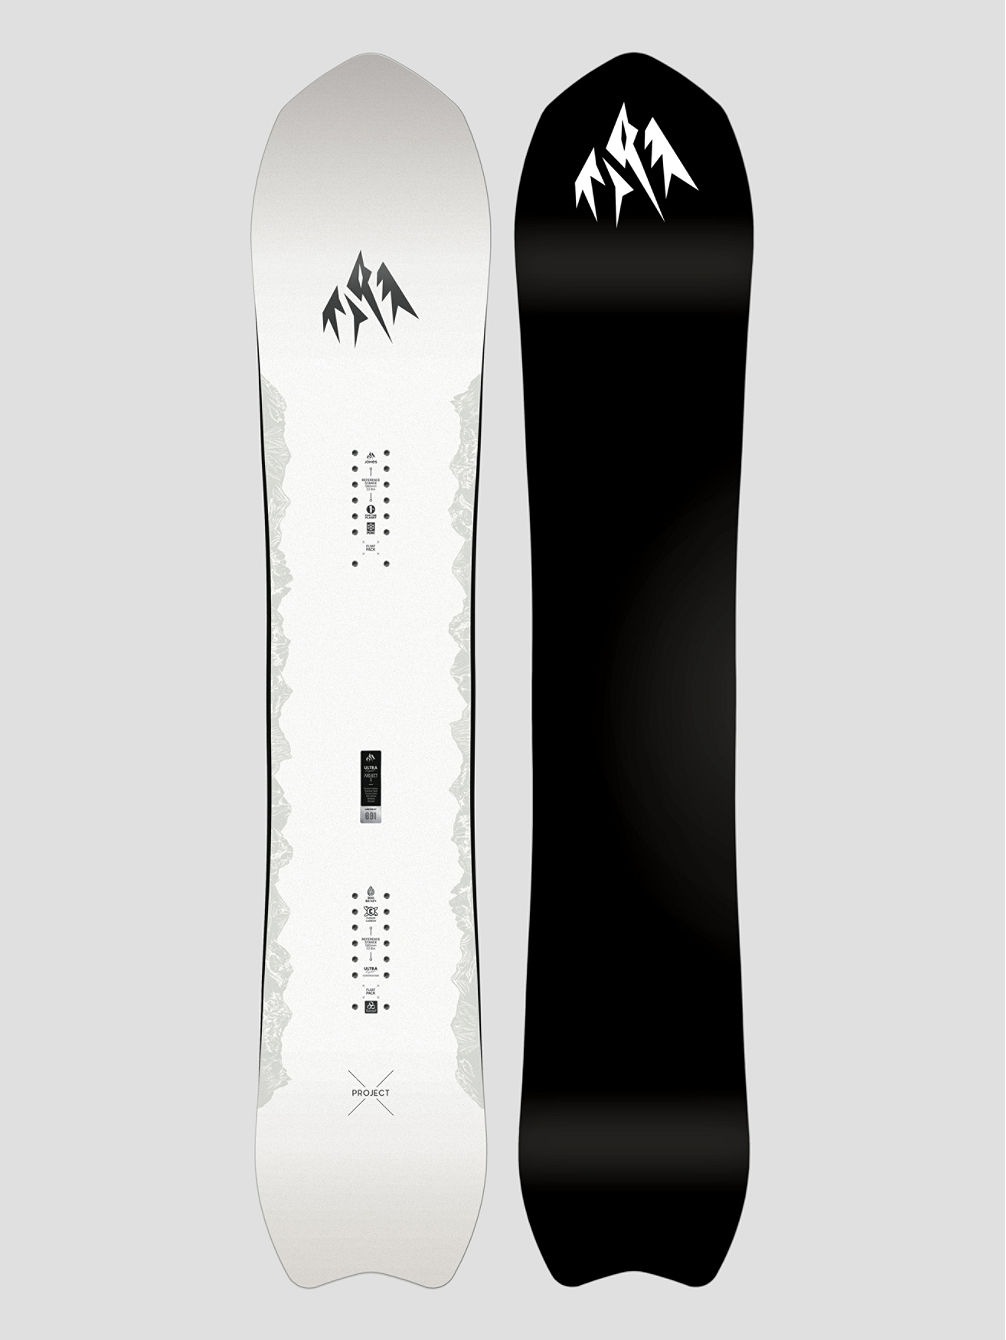 Ultralight Project X Snowboard